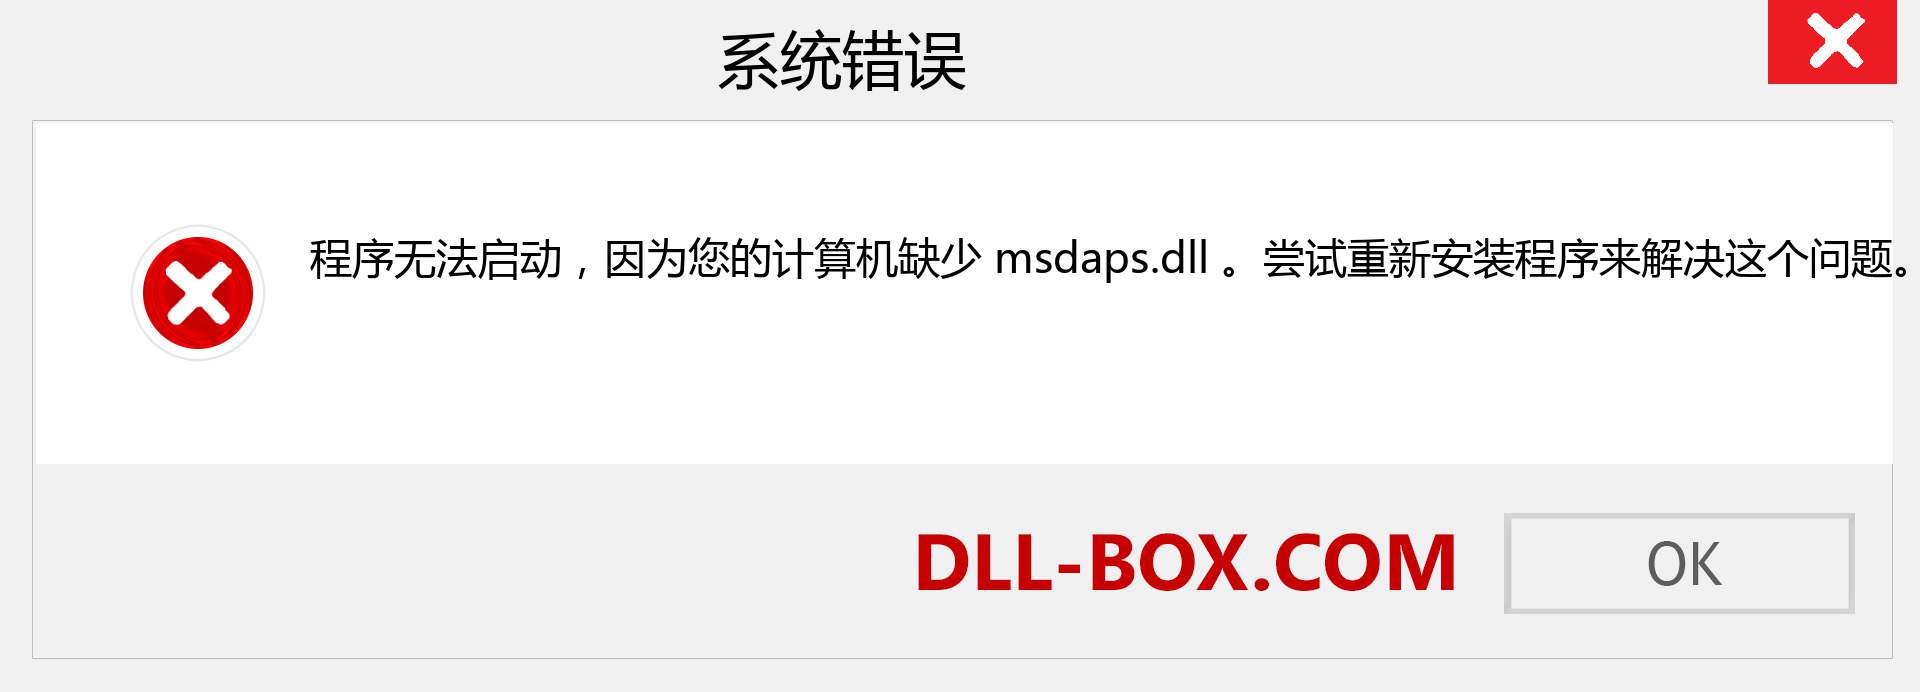 msdaps.dll 文件丢失？。 适用于 Windows 7、8、10 的下载 - 修复 Windows、照片、图像上的 msdaps dll 丢失错误